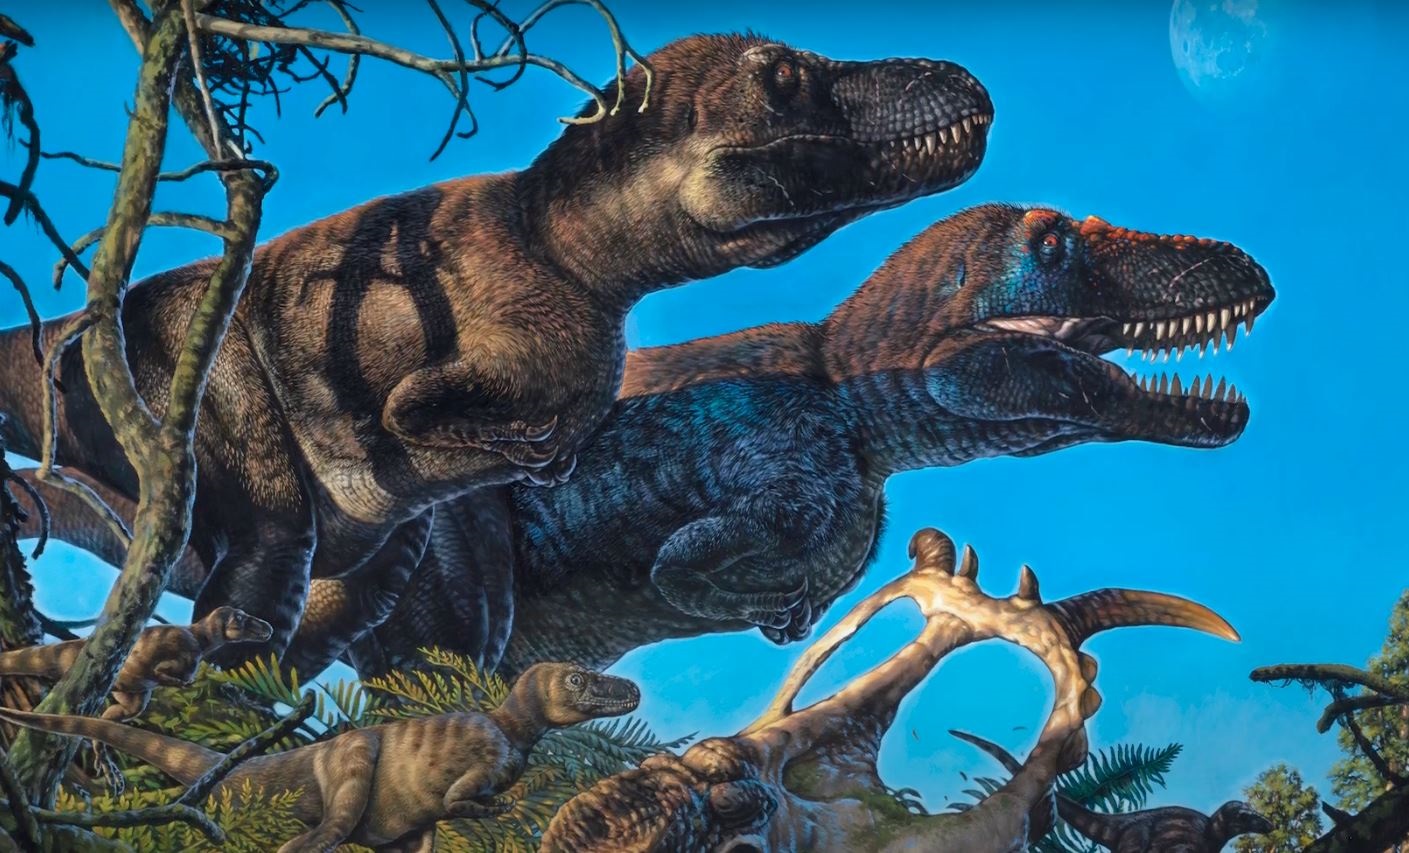  dinosaurios también anidaron en el Ártico - Infobae